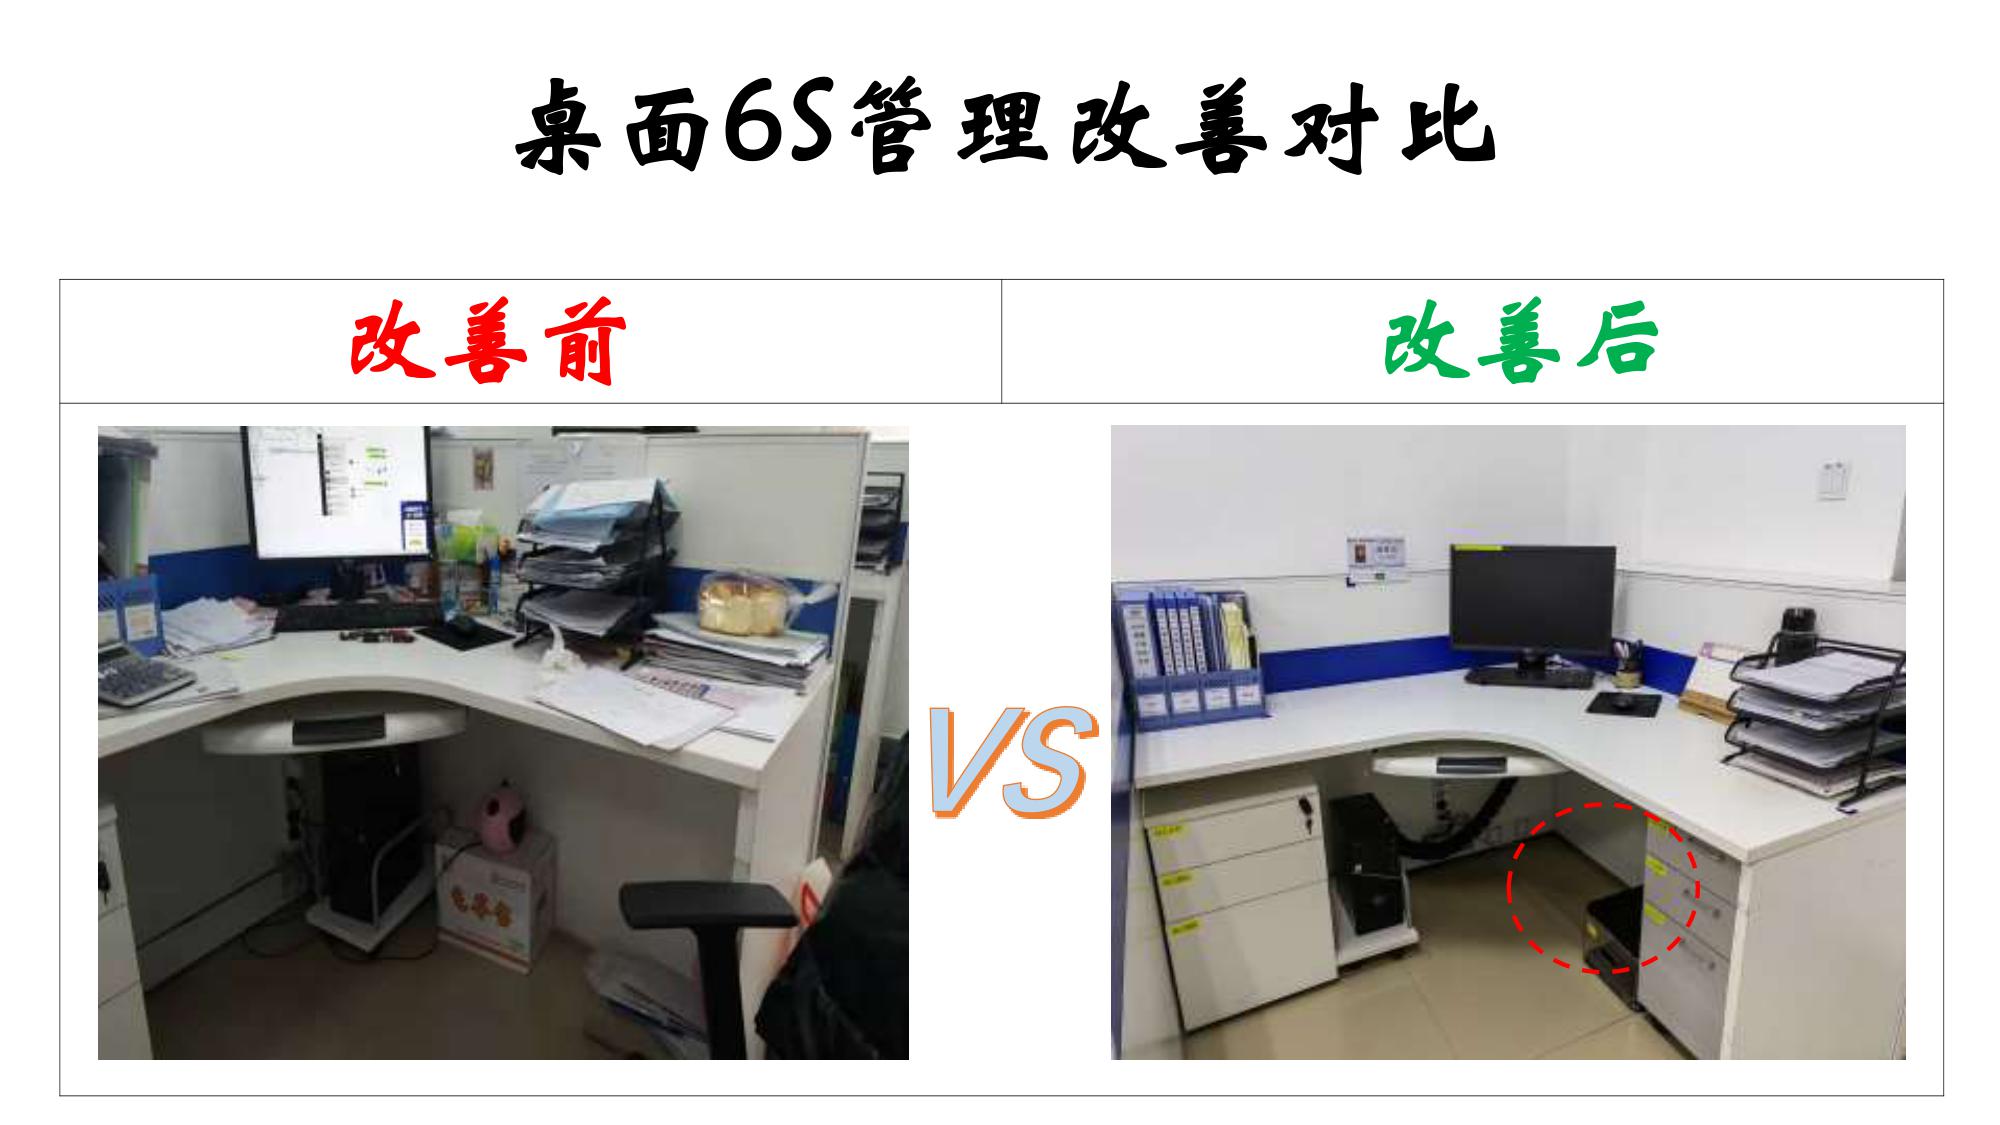 办公区域6S管理改善对比——桌面管理